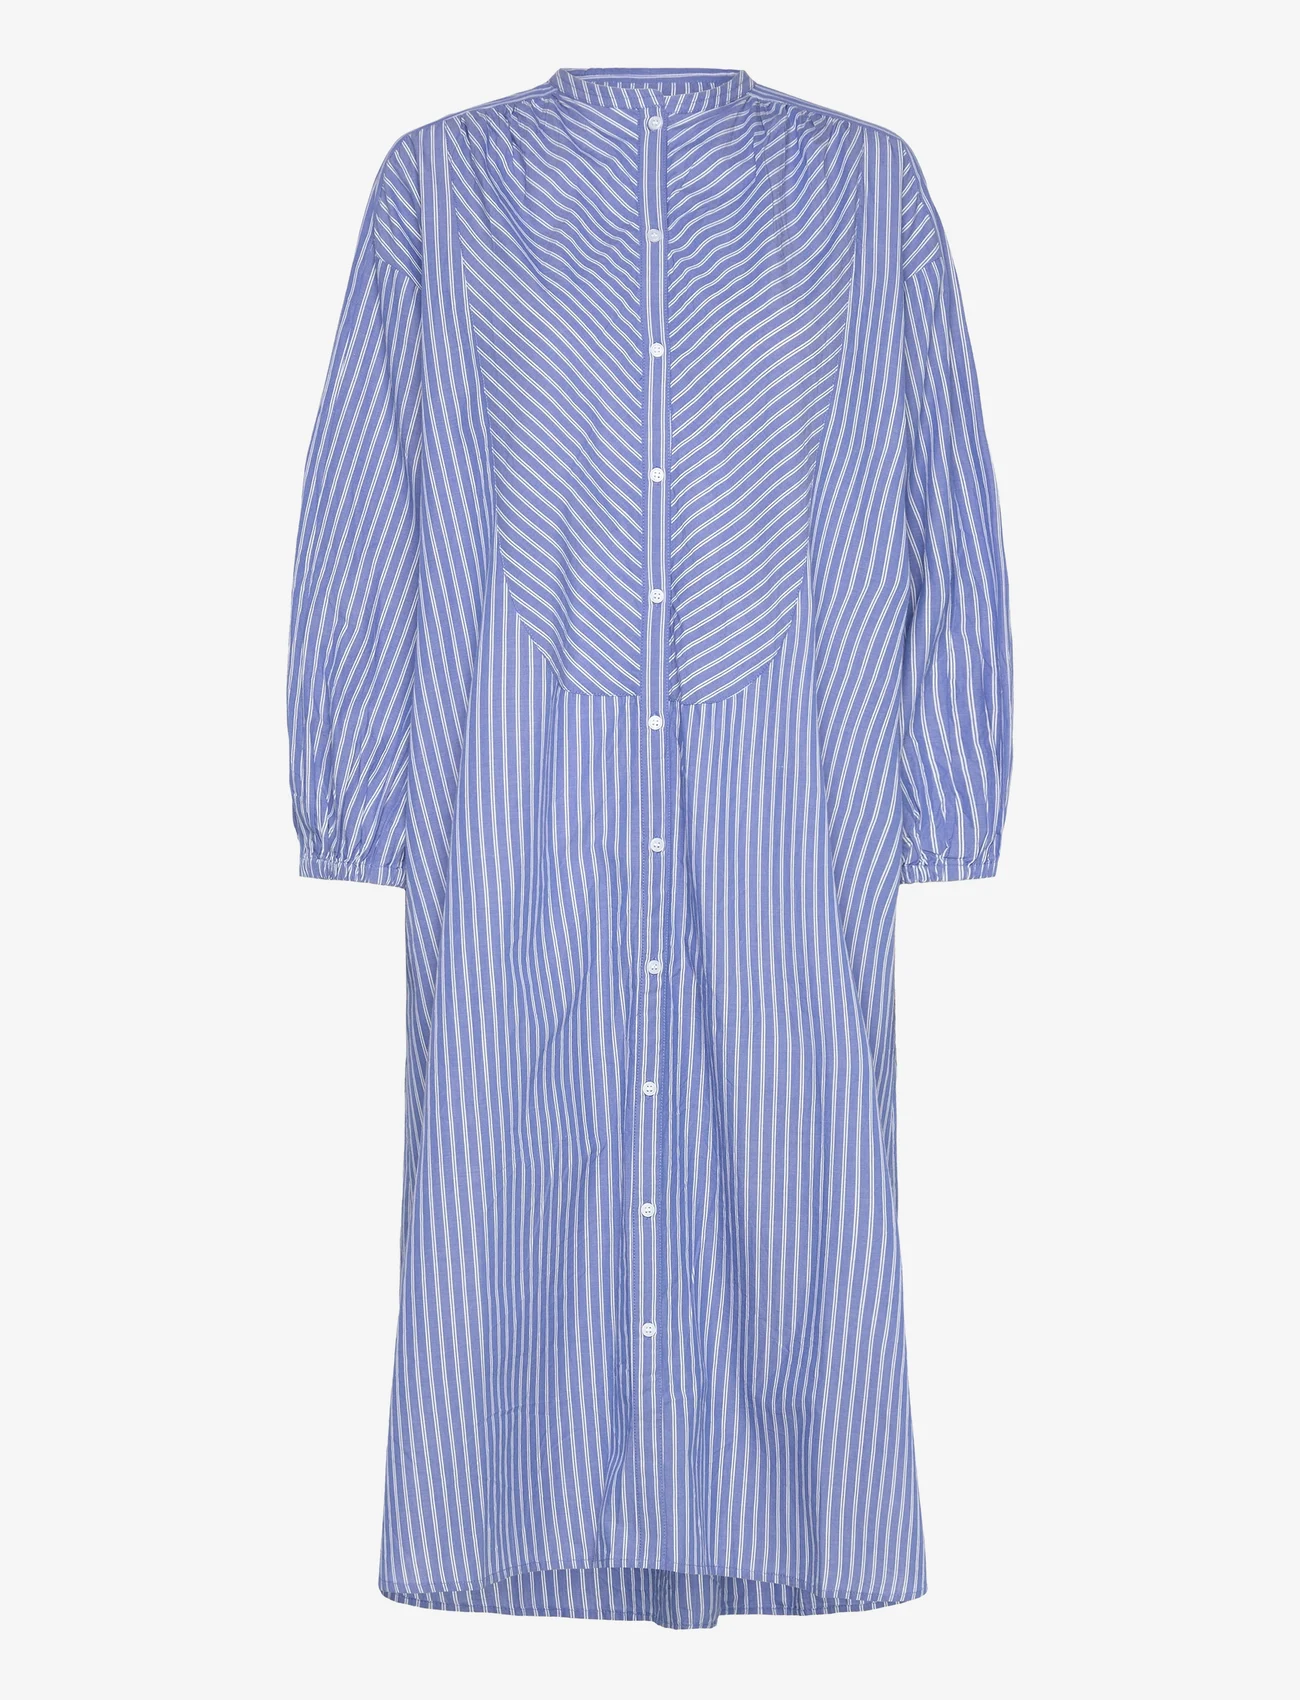 Moshi Moshi Mind - lauren shirtdress stripe - skjortekjoler - heaven blue / ecru - 0